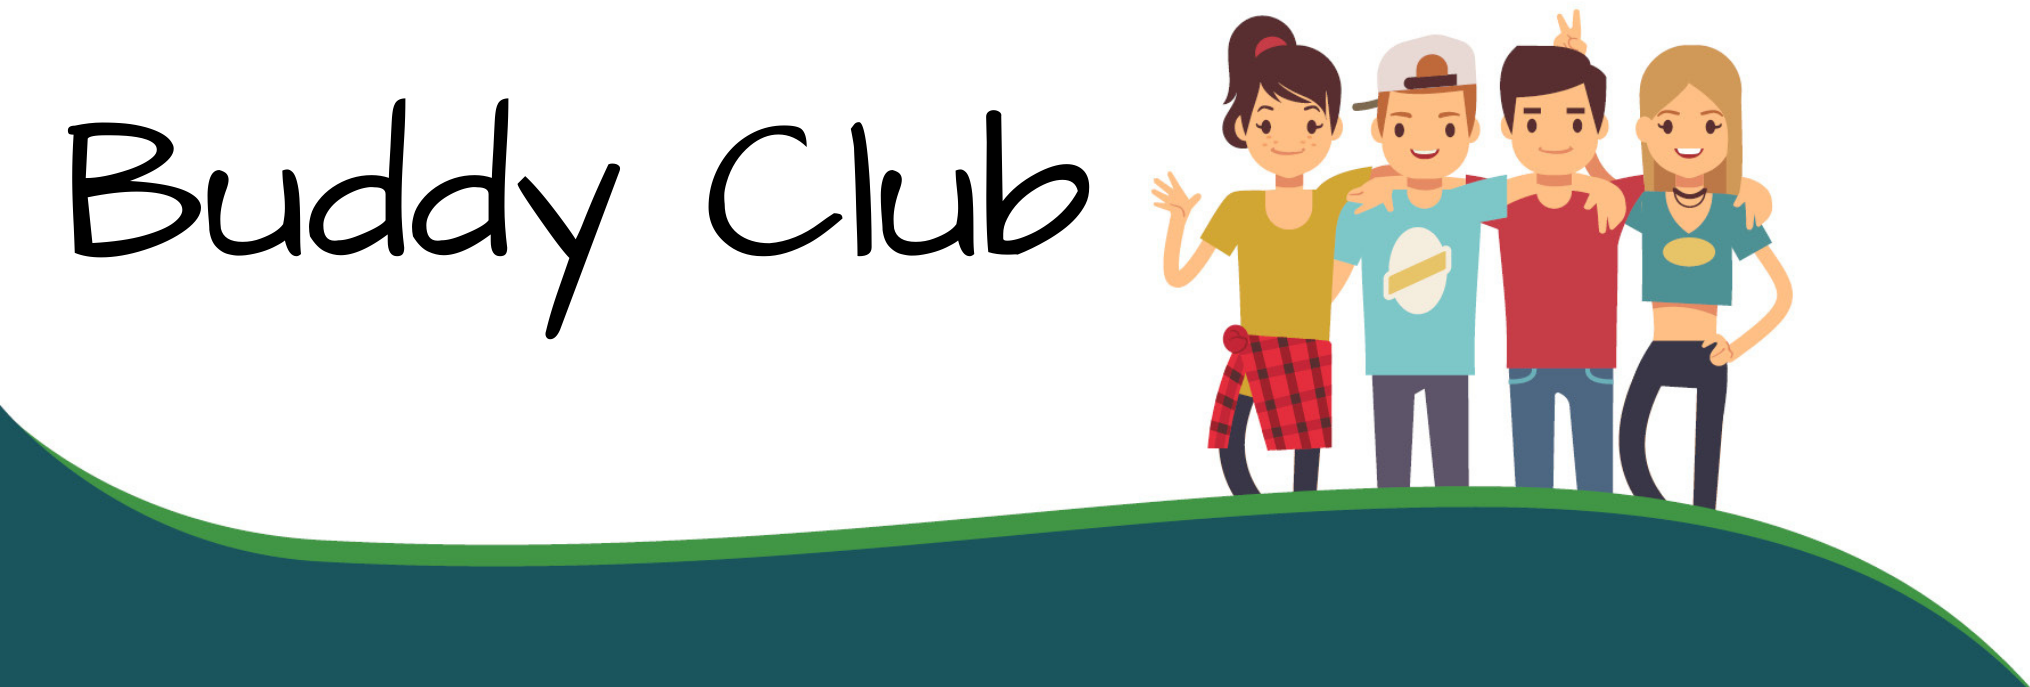 Buddy Club logo